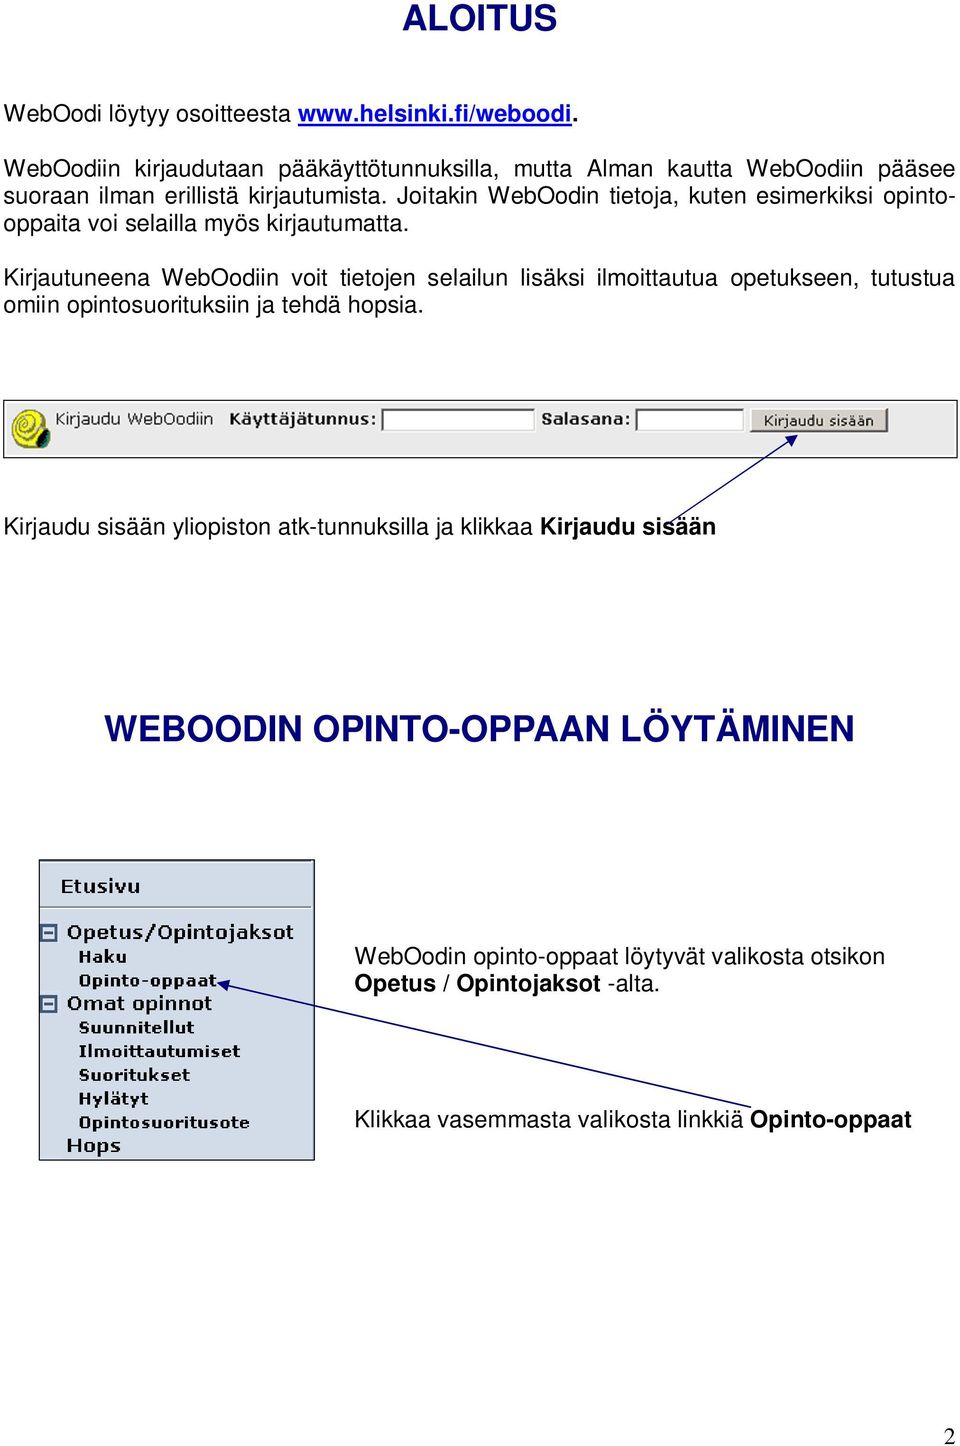 Joitakin WebOodin tietoja, kuten esimerkiksi opintooppaita voi selailla myös kirjautumatta.